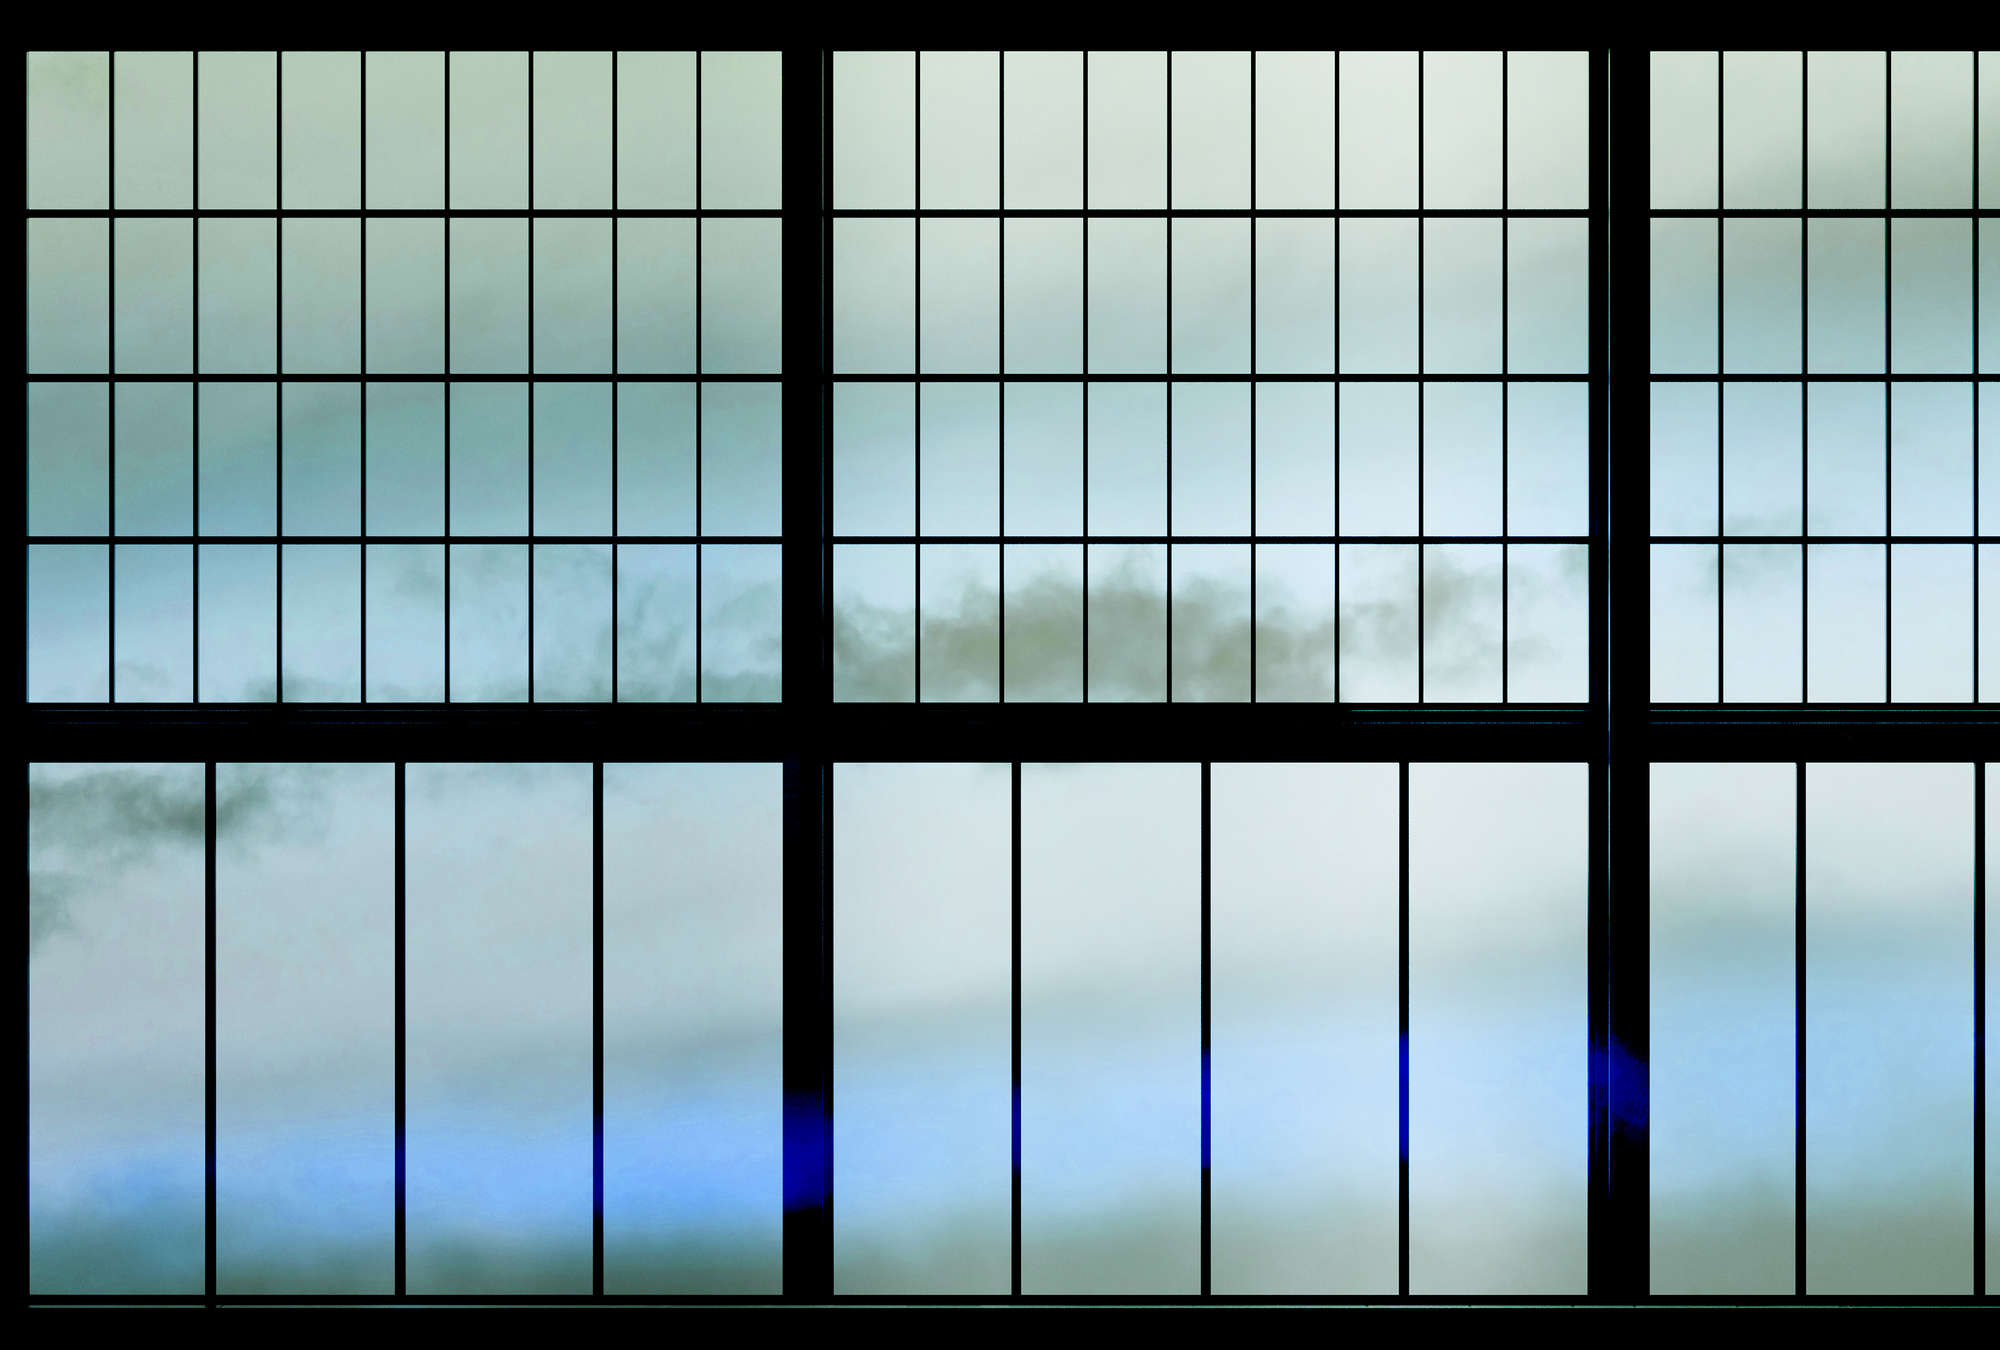             Sky 3 - Fototapete Sprossenfenster mit Wolkenhimmel – Blau, Schwarz | Perlmutt Glattvlies
        